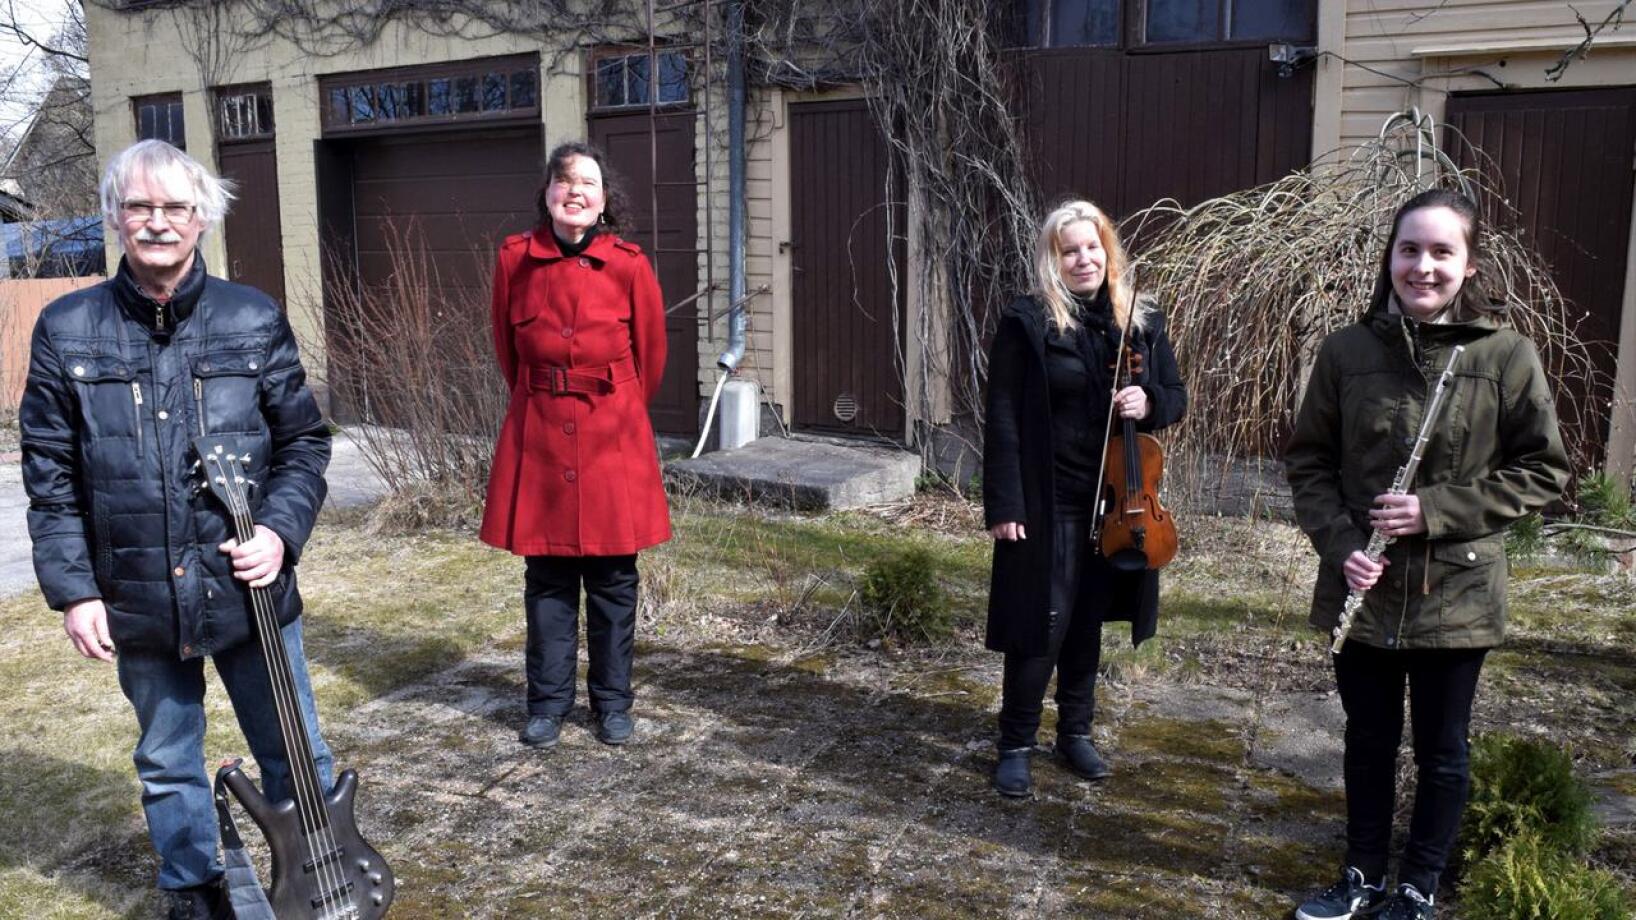 Valosydän-kvartetin muodostavat Markku Lönngren, Pia-Lena Leskinen, Heli Kivistö ja Emmi Haapamäki. Yhtyeen tyylilajiksi voidaan nimetä tunnelmallinen instrumentaalimusiikki, joka on sataprosenttisesti omaa tuotantoa.